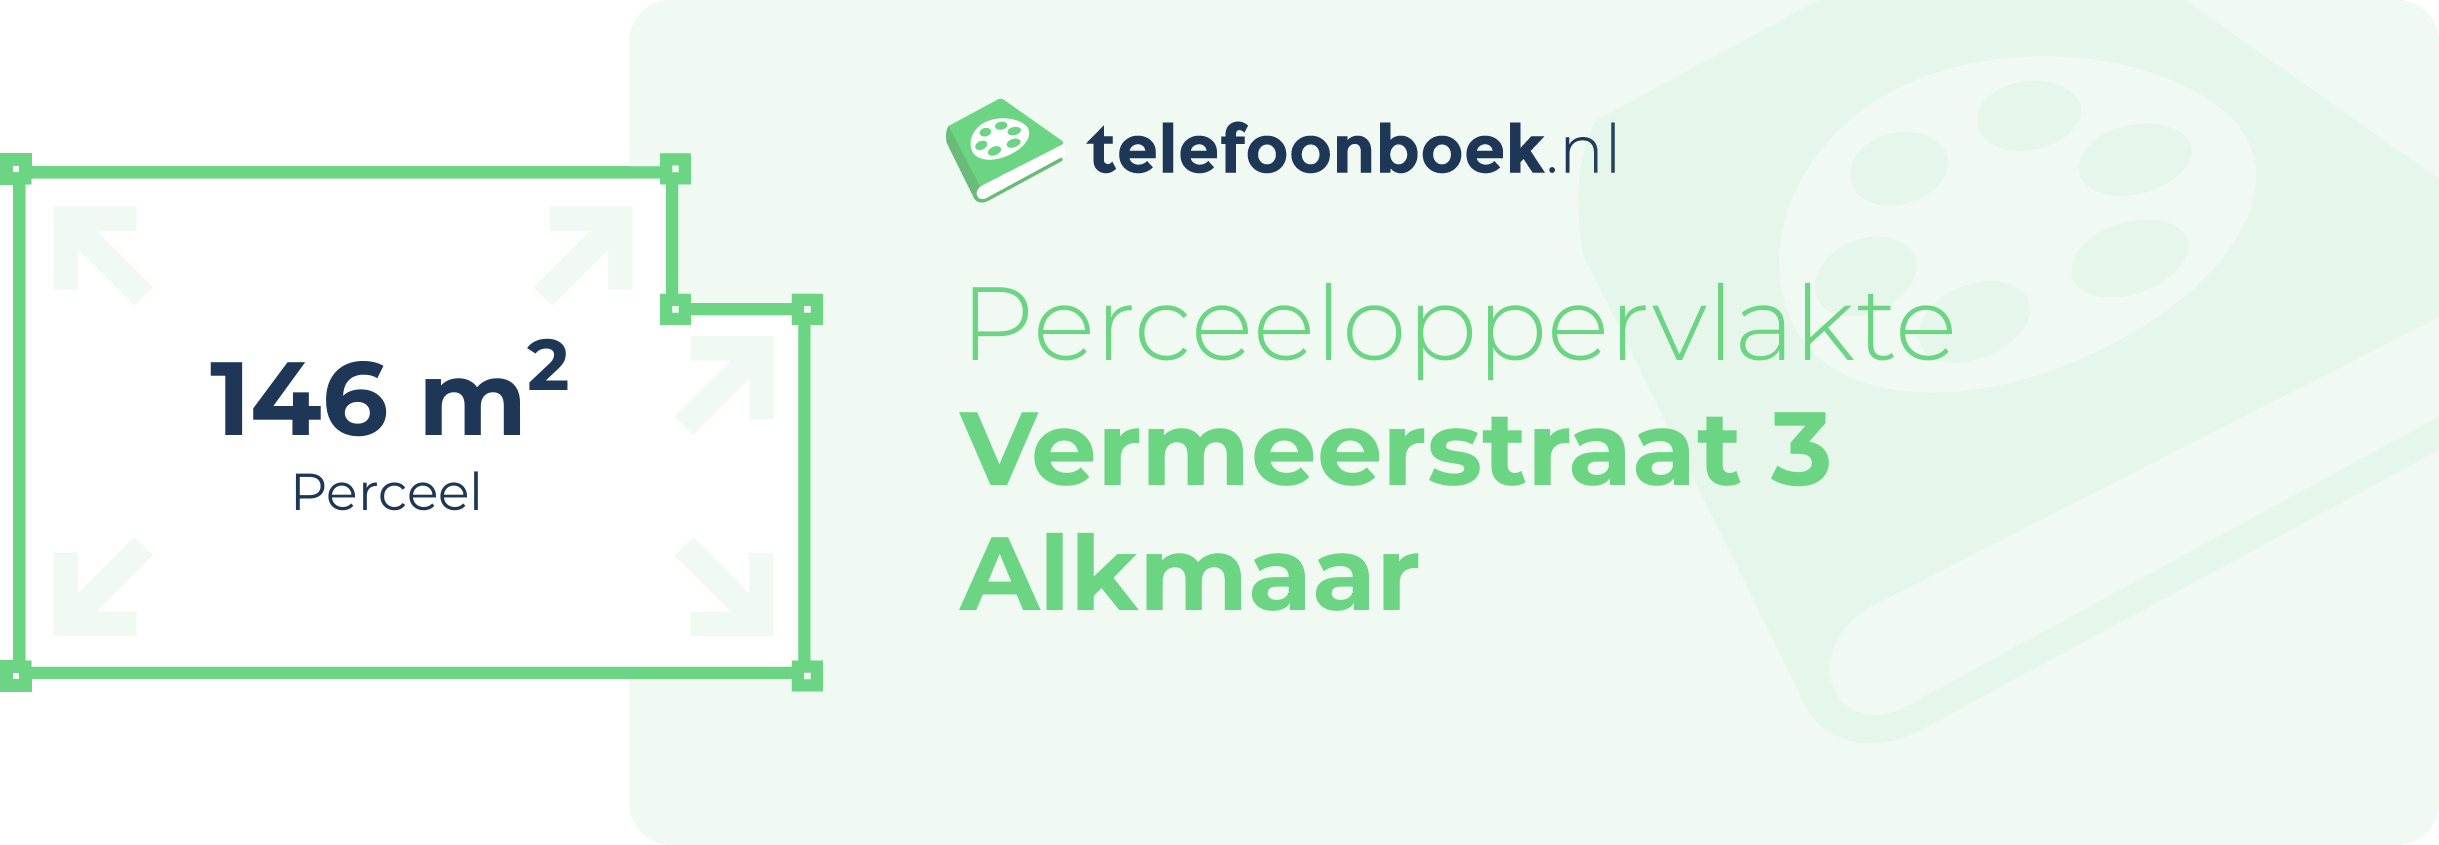 Perceeloppervlakte Vermeerstraat 3 Alkmaar